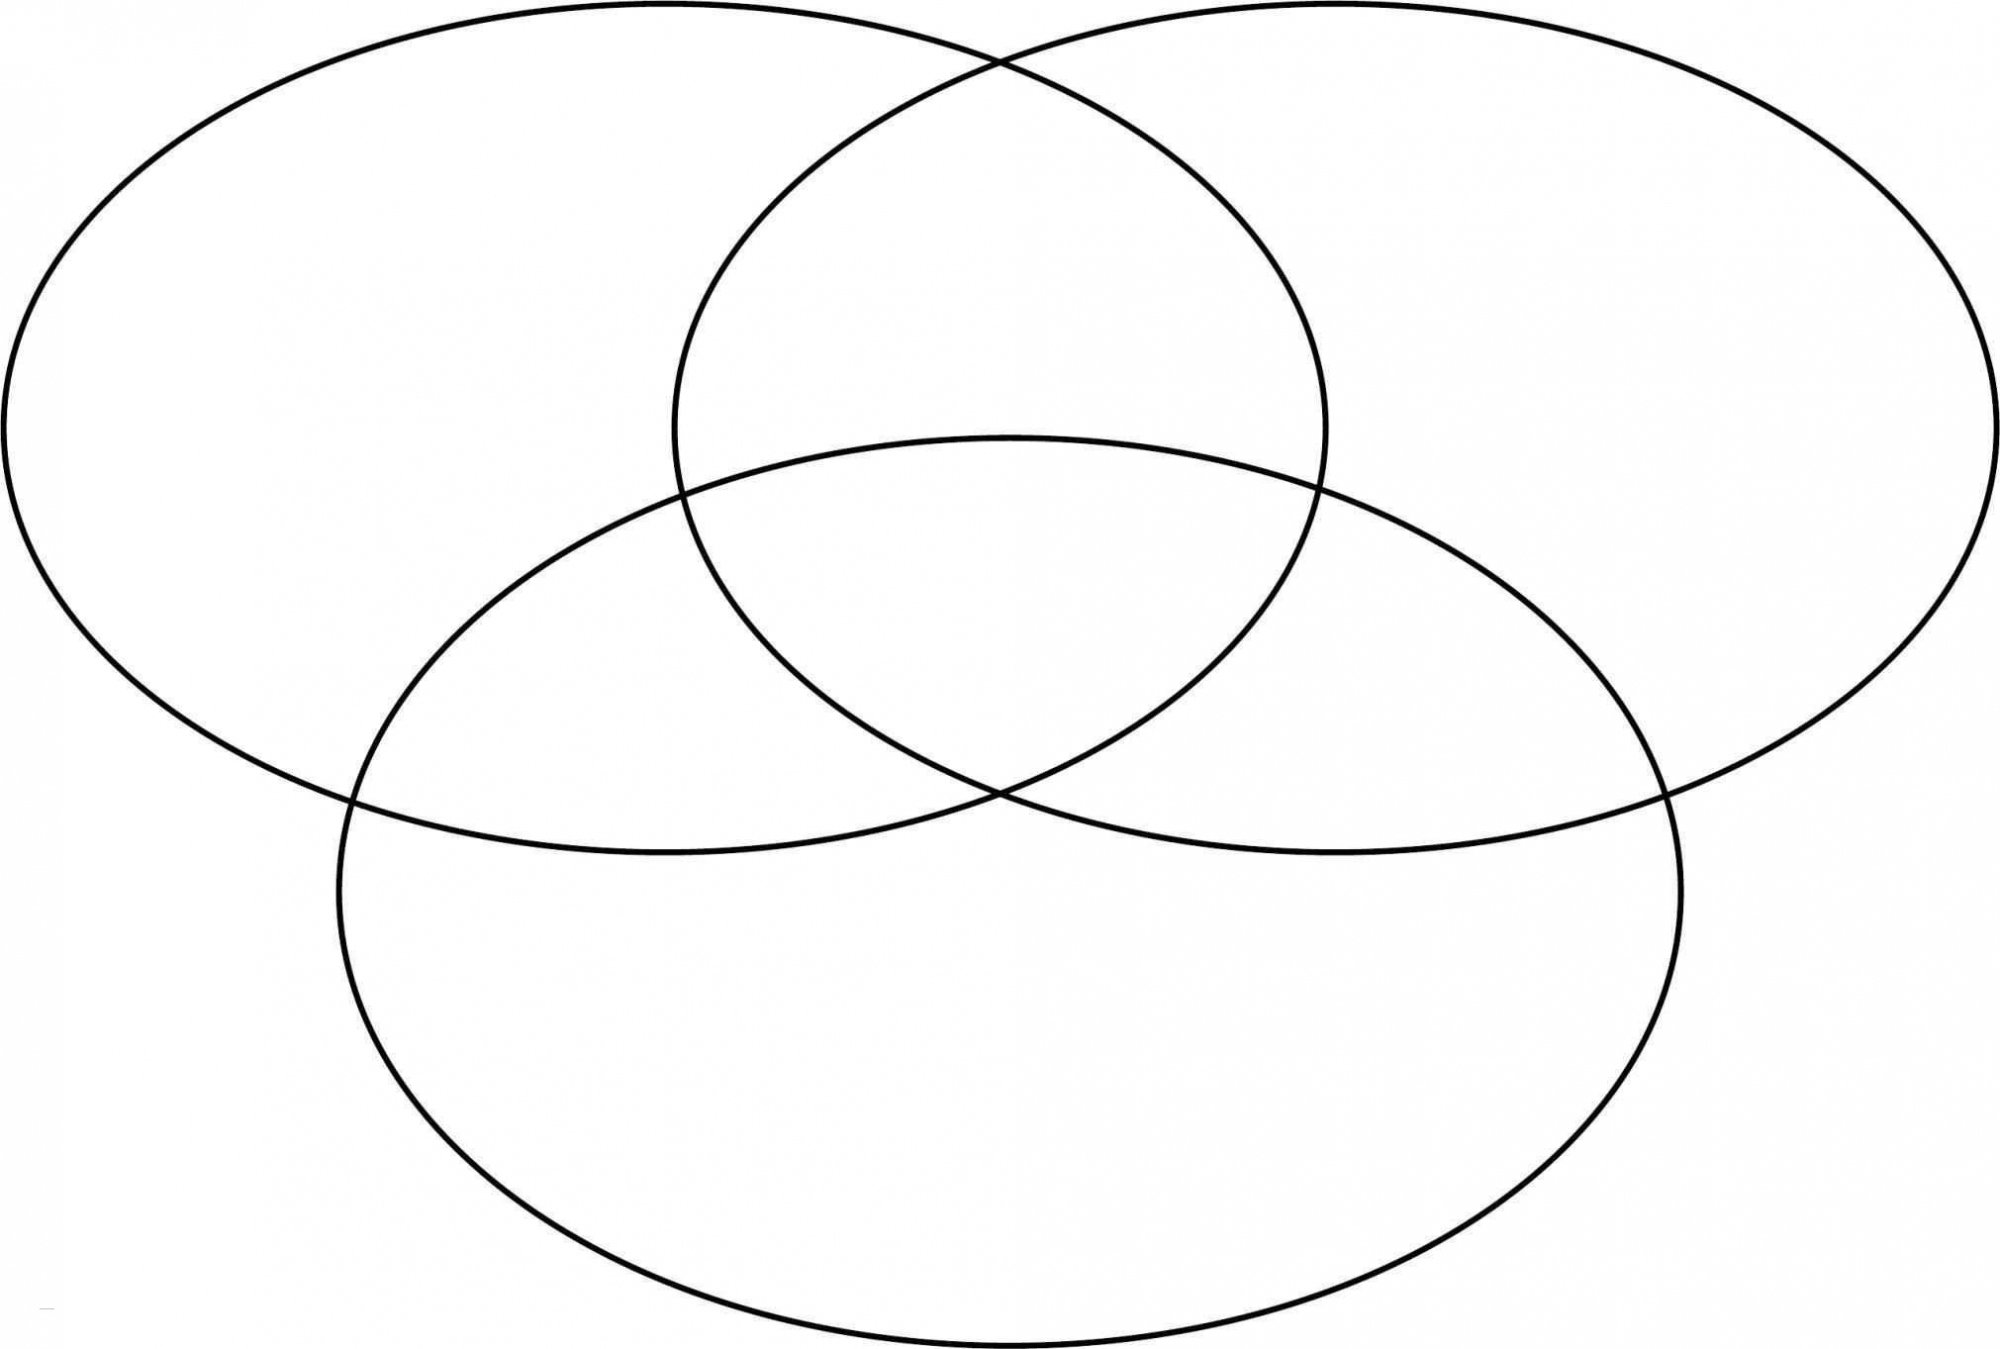 Круга в любой форме. Три круга Эйлера. Круги Эйлера Венна. Три пересекающихся круга Эйлера. Venn диаграммы.